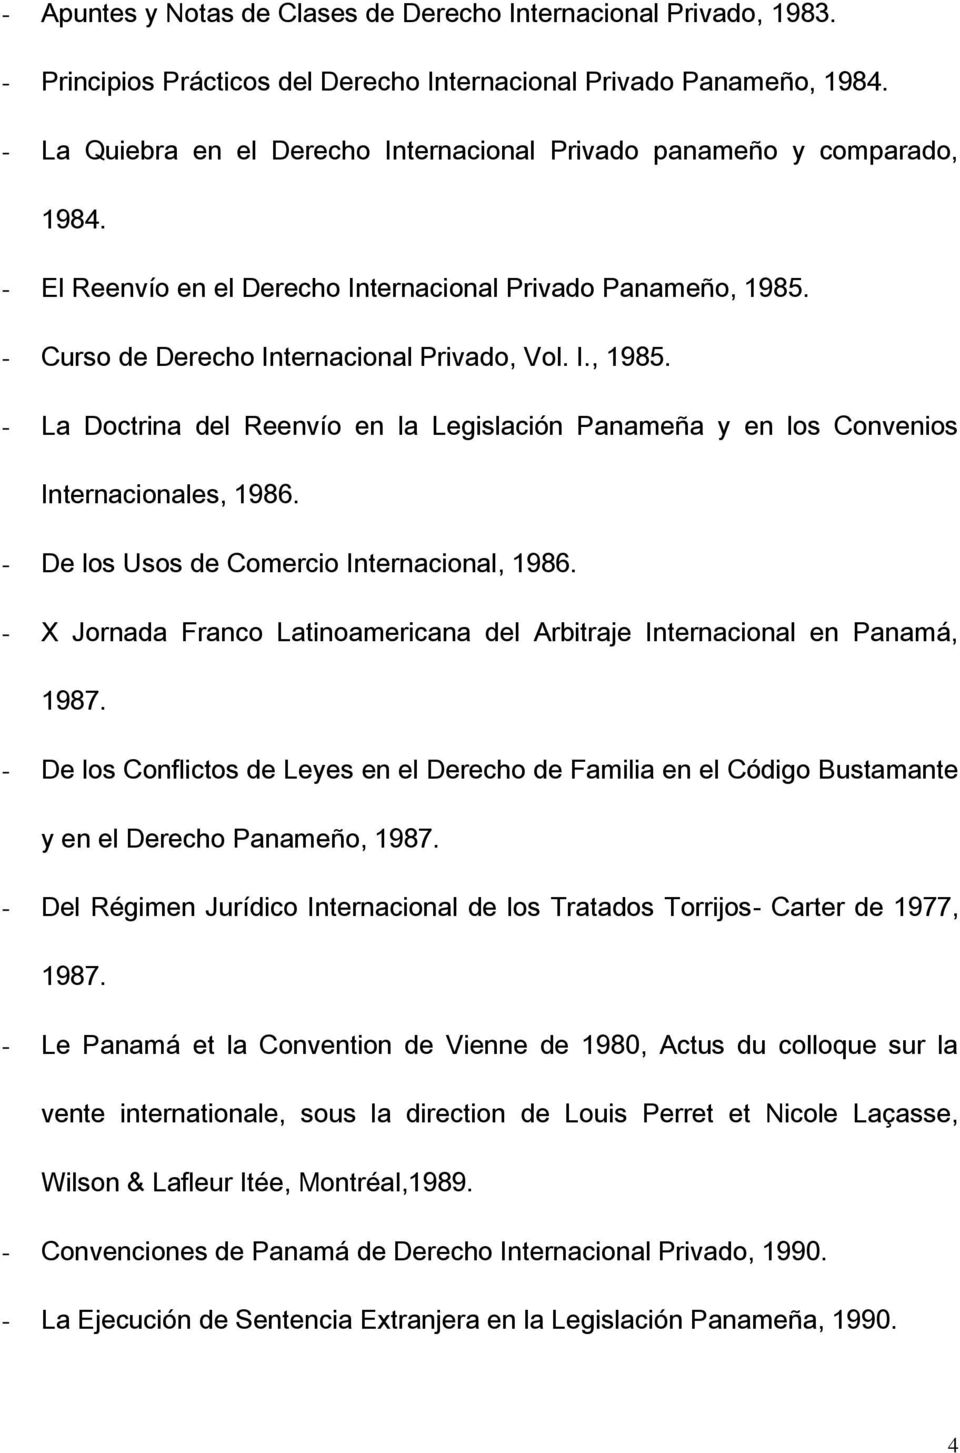 - Curso de Derecho Internacional Privado, Vol. I., 1985. - La Doctrina del Reenvío en la Legislación Panameña y en los Convenios Internacionales, 1986. - De los Usos de Comercio Internacional, 1986.